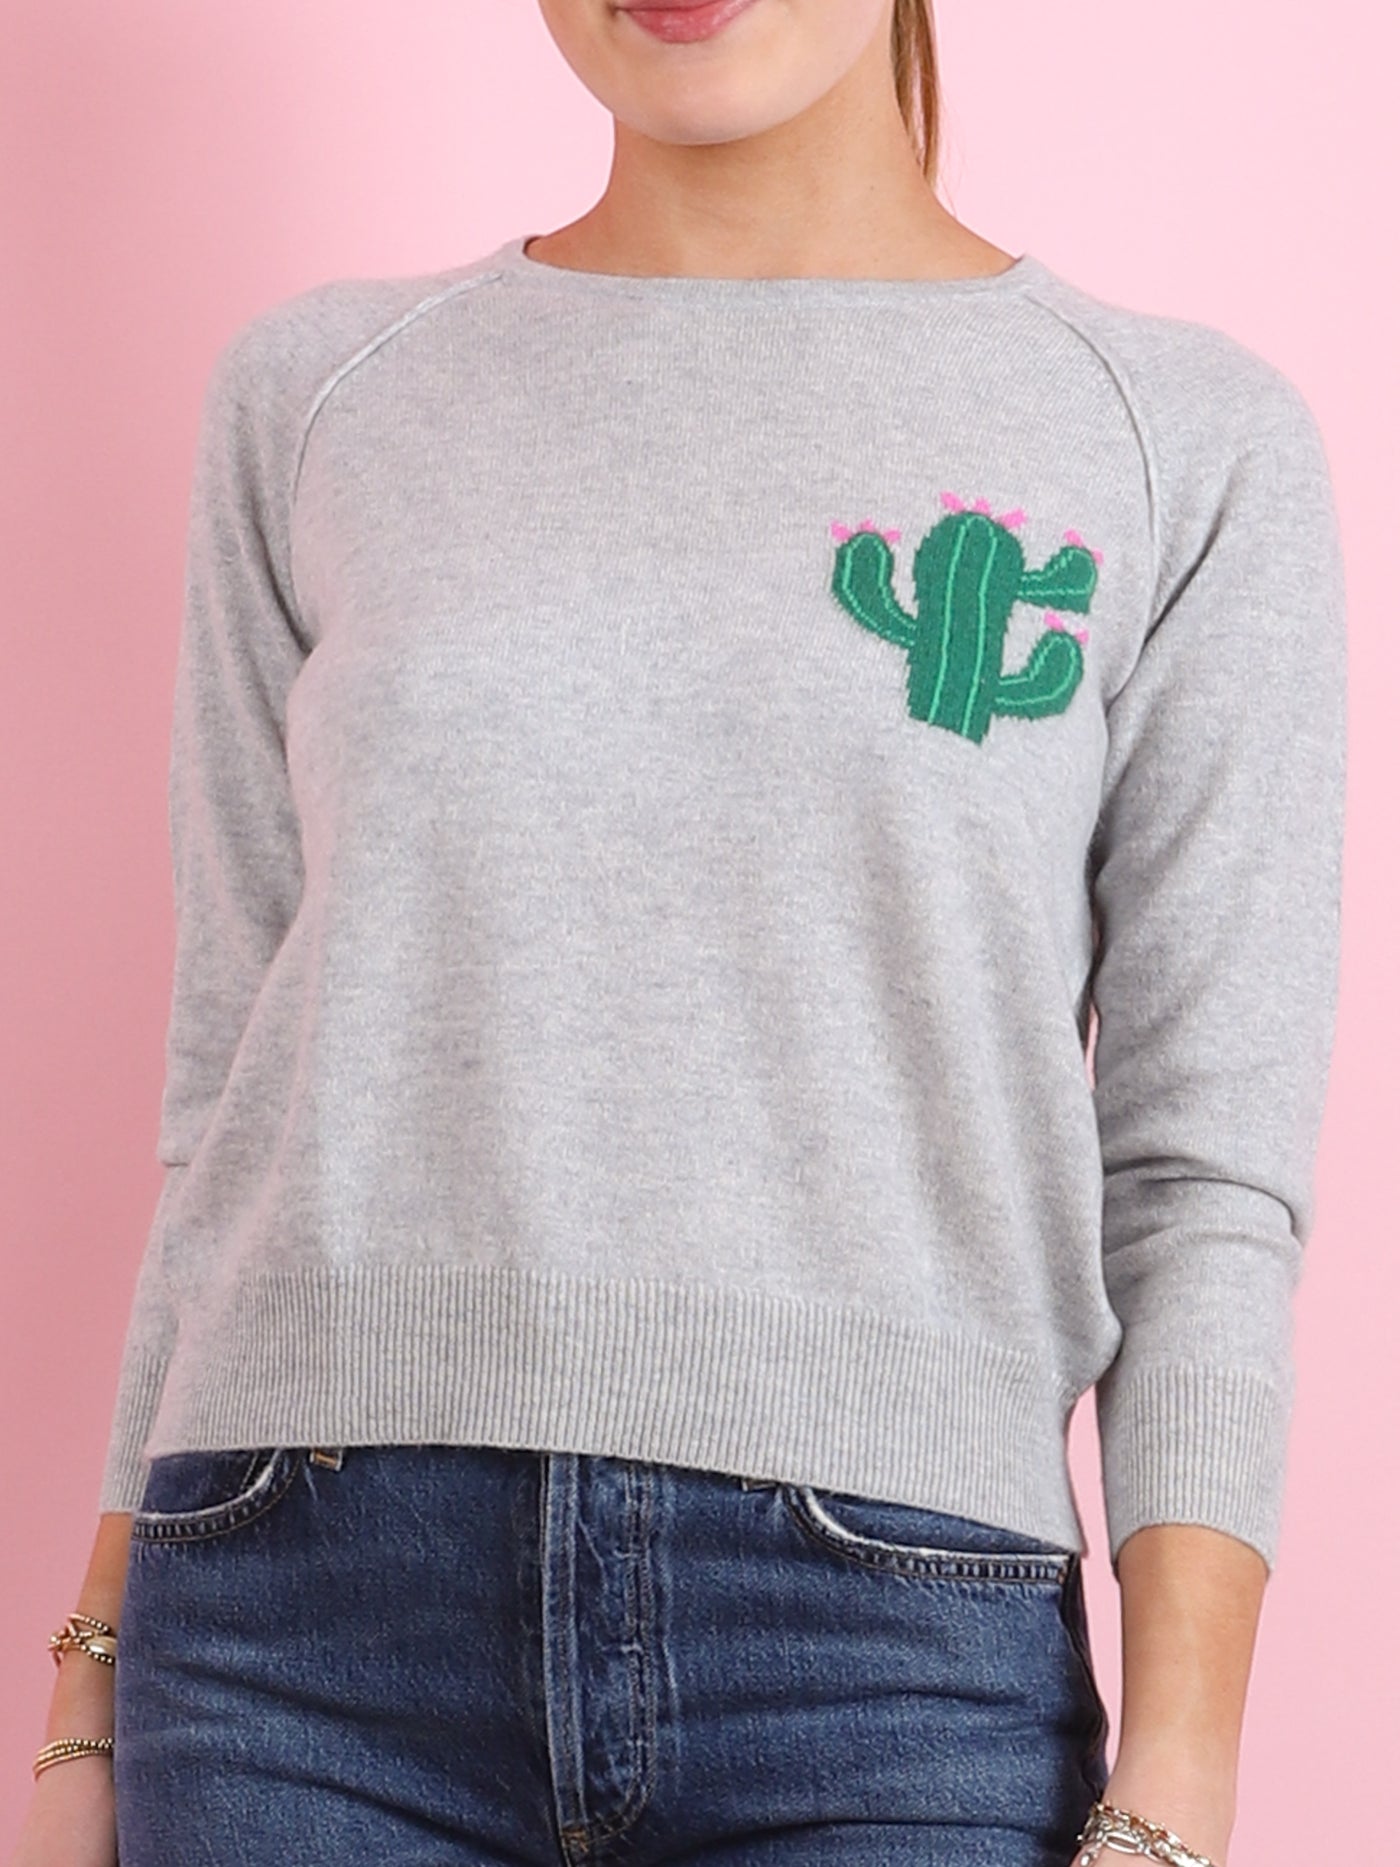 Little Cactus Crew Sweater